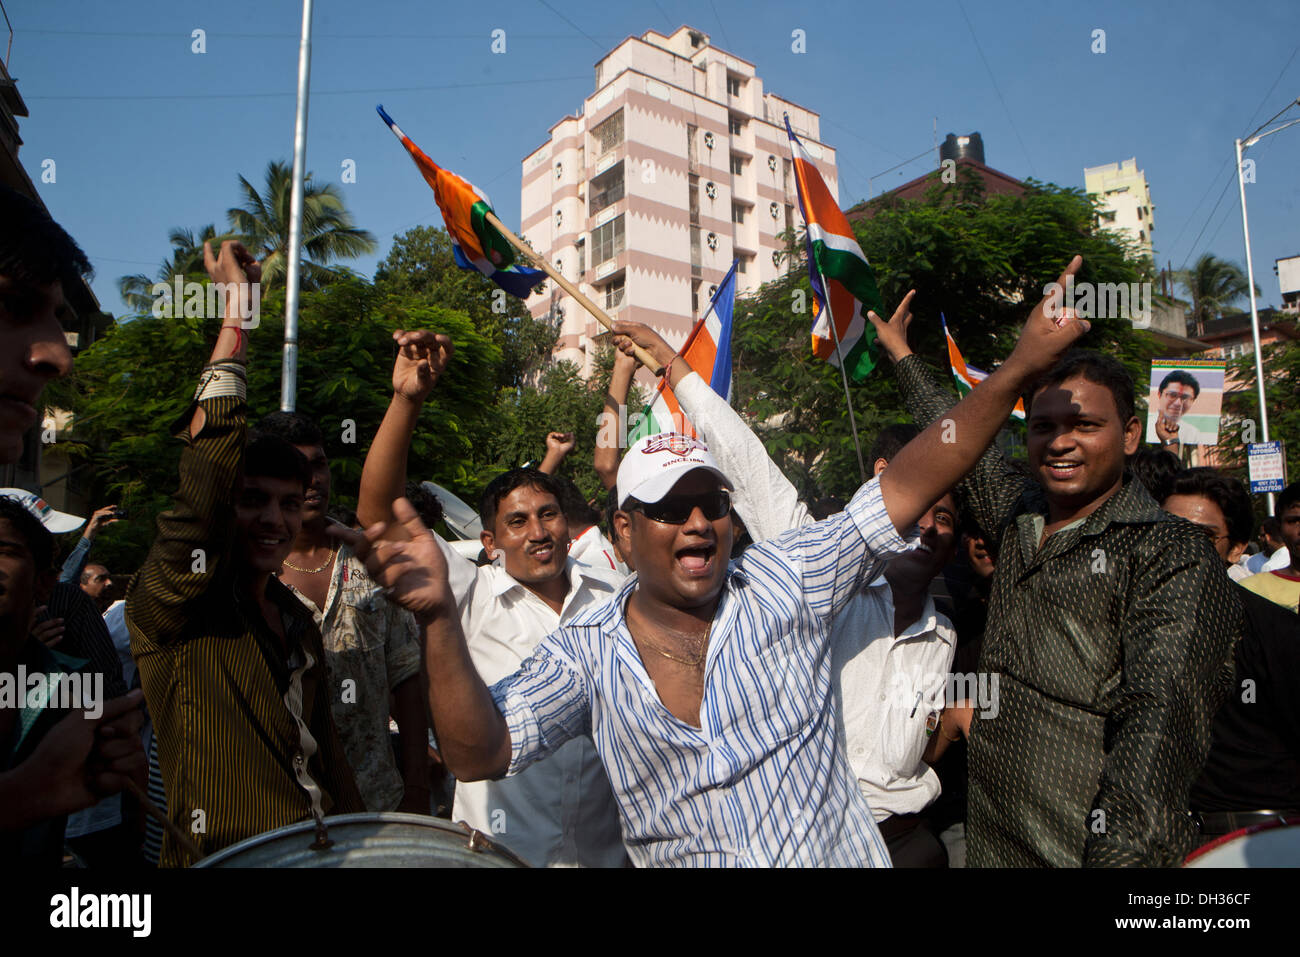 men supporters shouting slogans celebrating election victory of MNS political candidate Mumbai Maharashtra India Asia Stock Photo